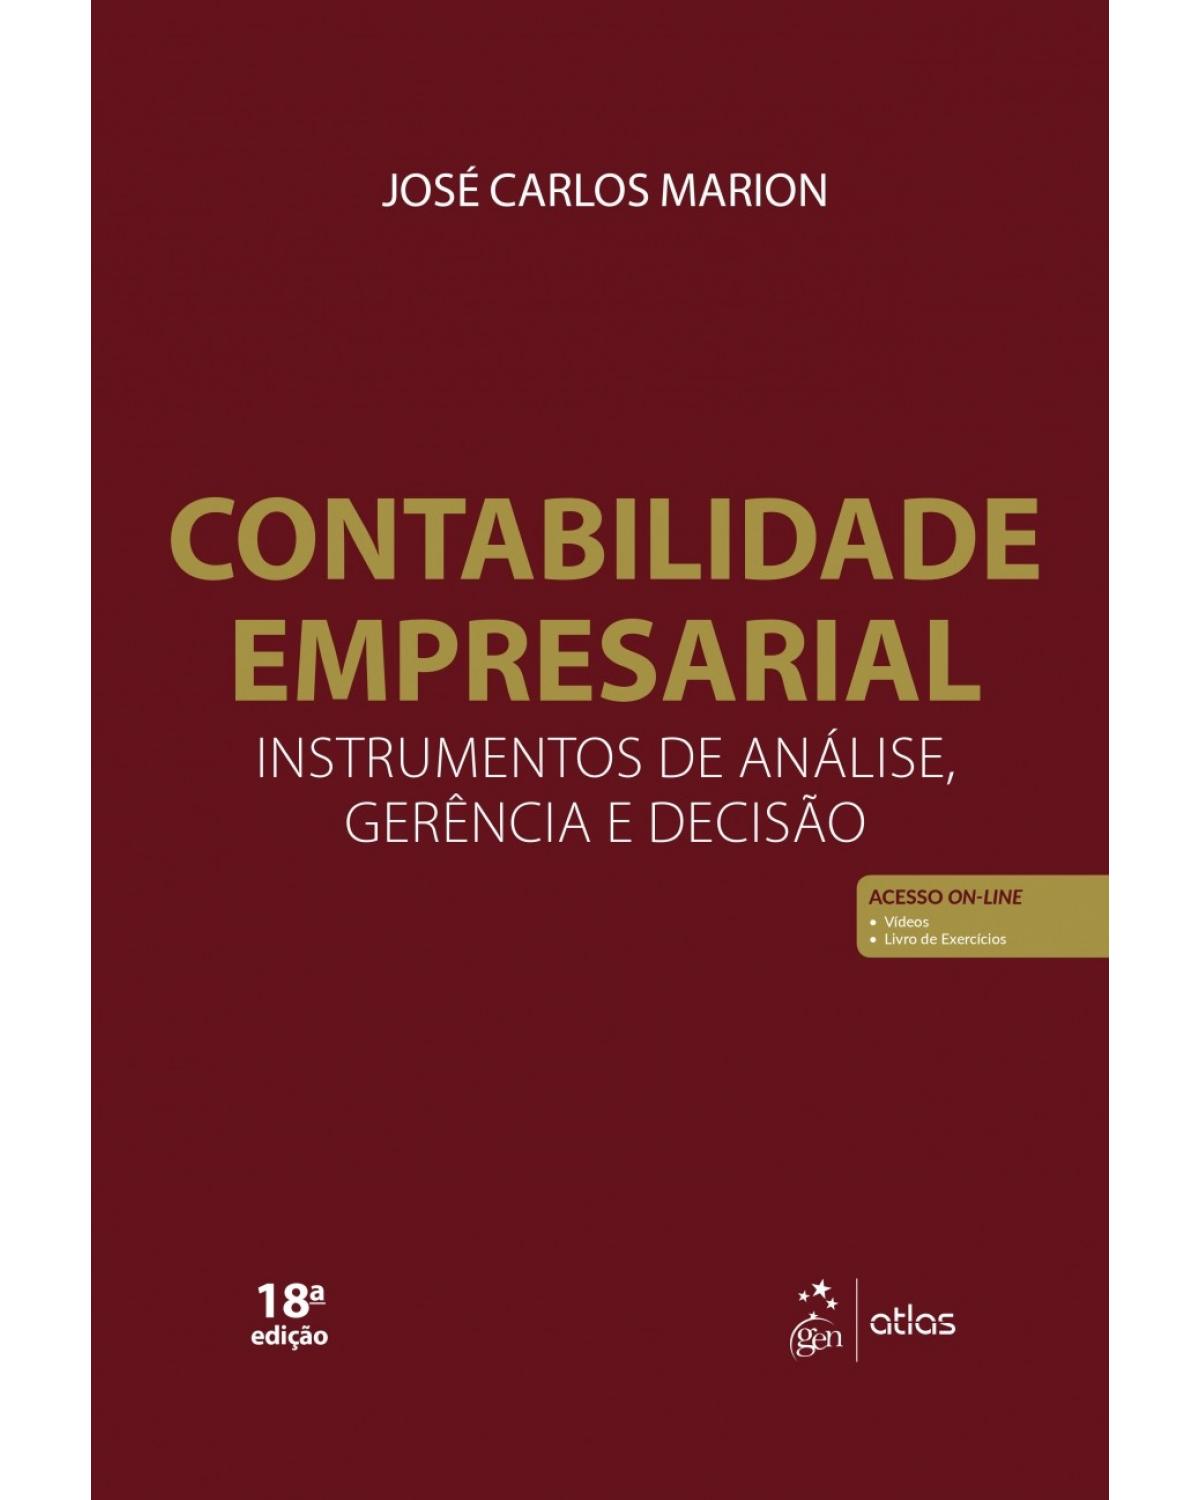 Contabilidade Empresarial - Instrumento de Análise, Gerência e Decisão - instrumentos de análise, gerência e decisão - 18ª Edição | 2018